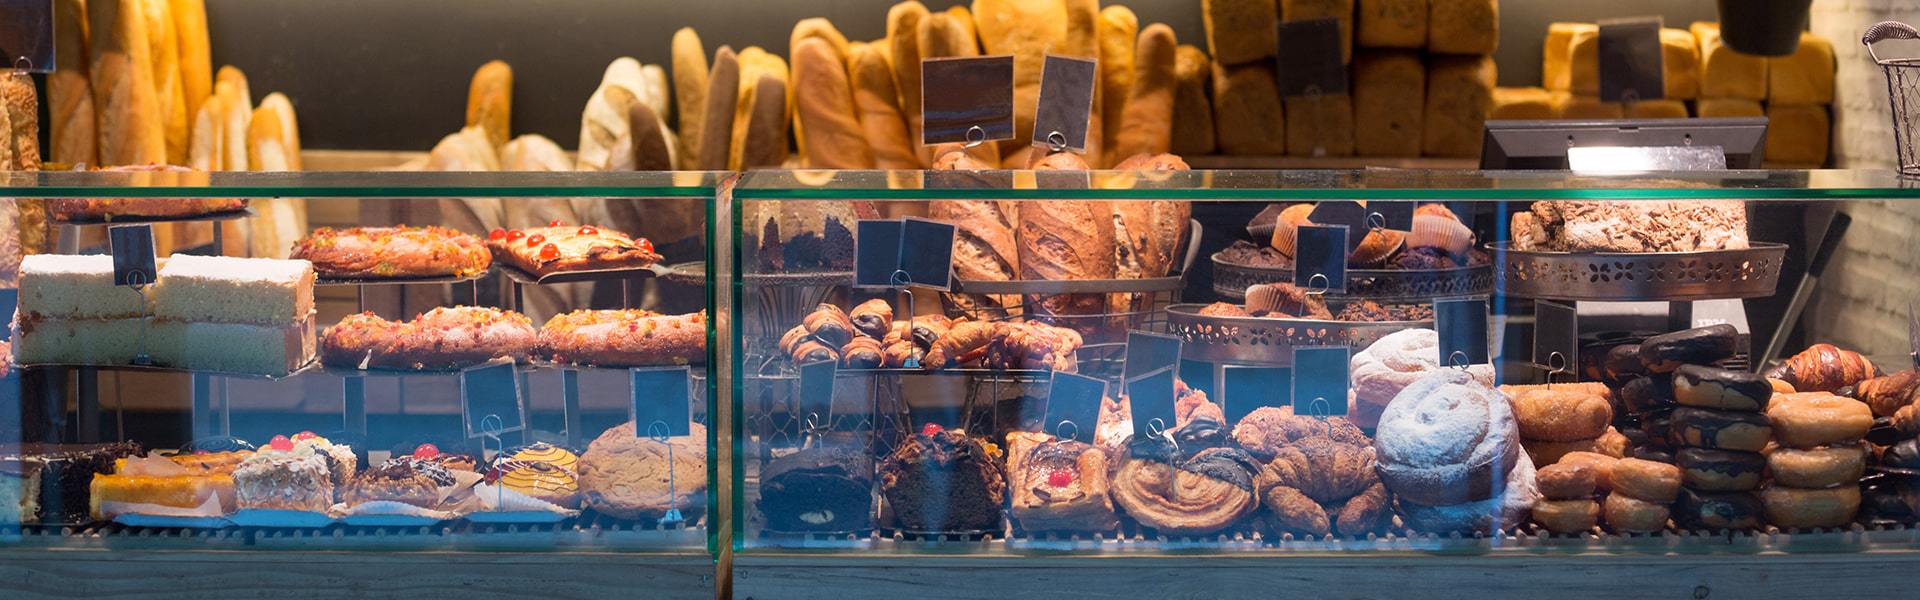 Danh sách 5 tiệm bánh ngon nhất Sài Gòn